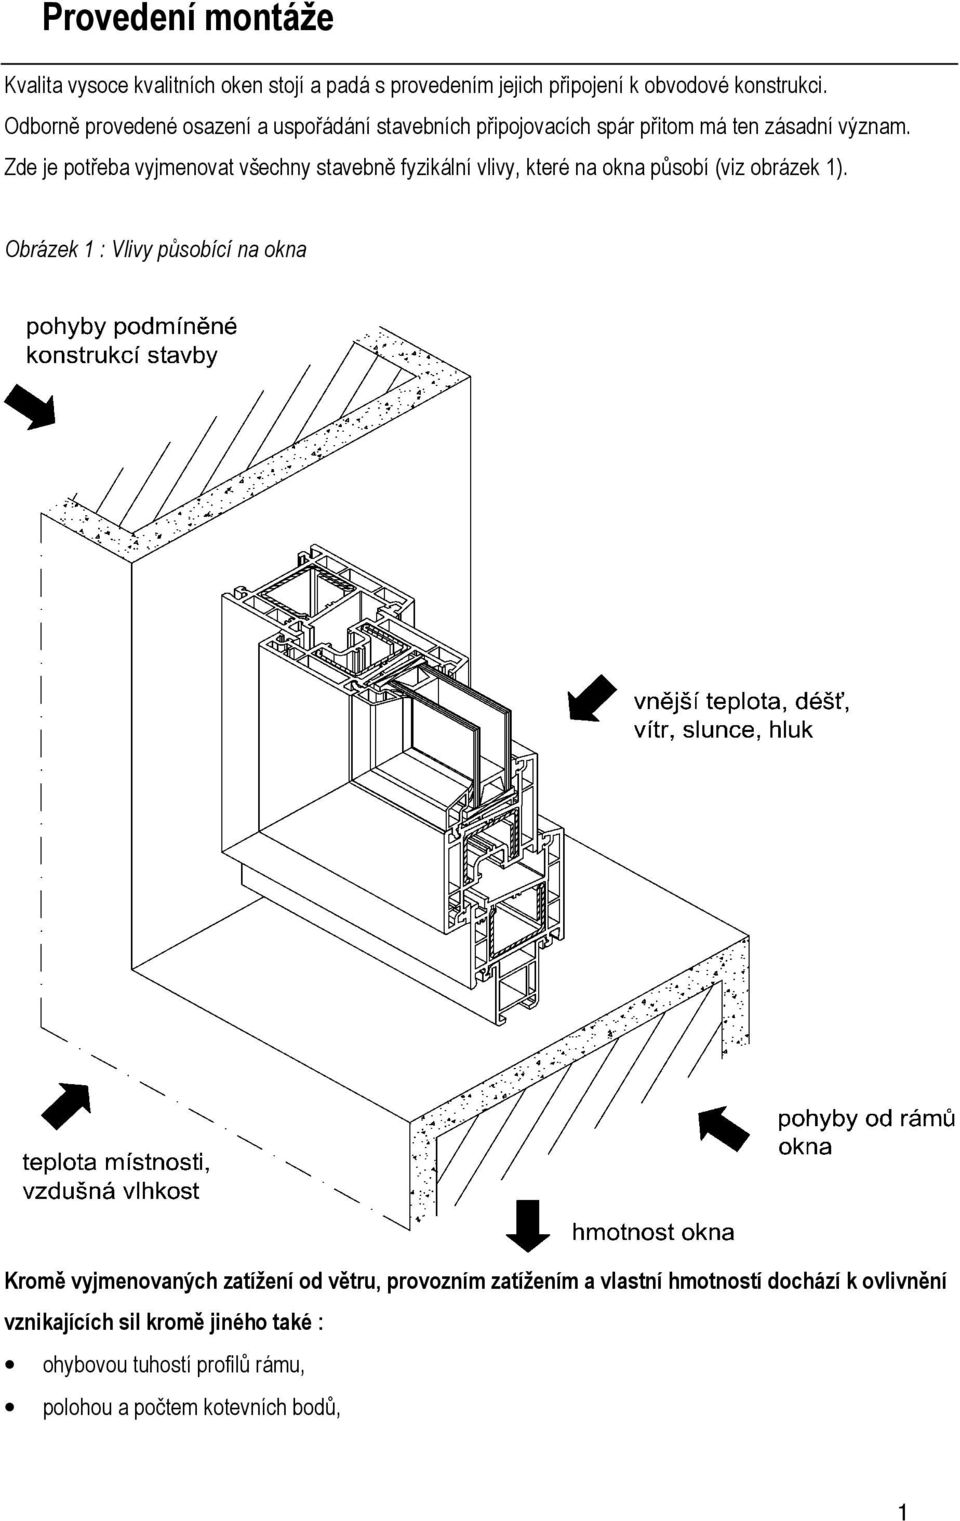 Zde je potřeba vyjmenovat všechny stavebně fyzikální vlivy, které na okna působí (viz obrázek 1).